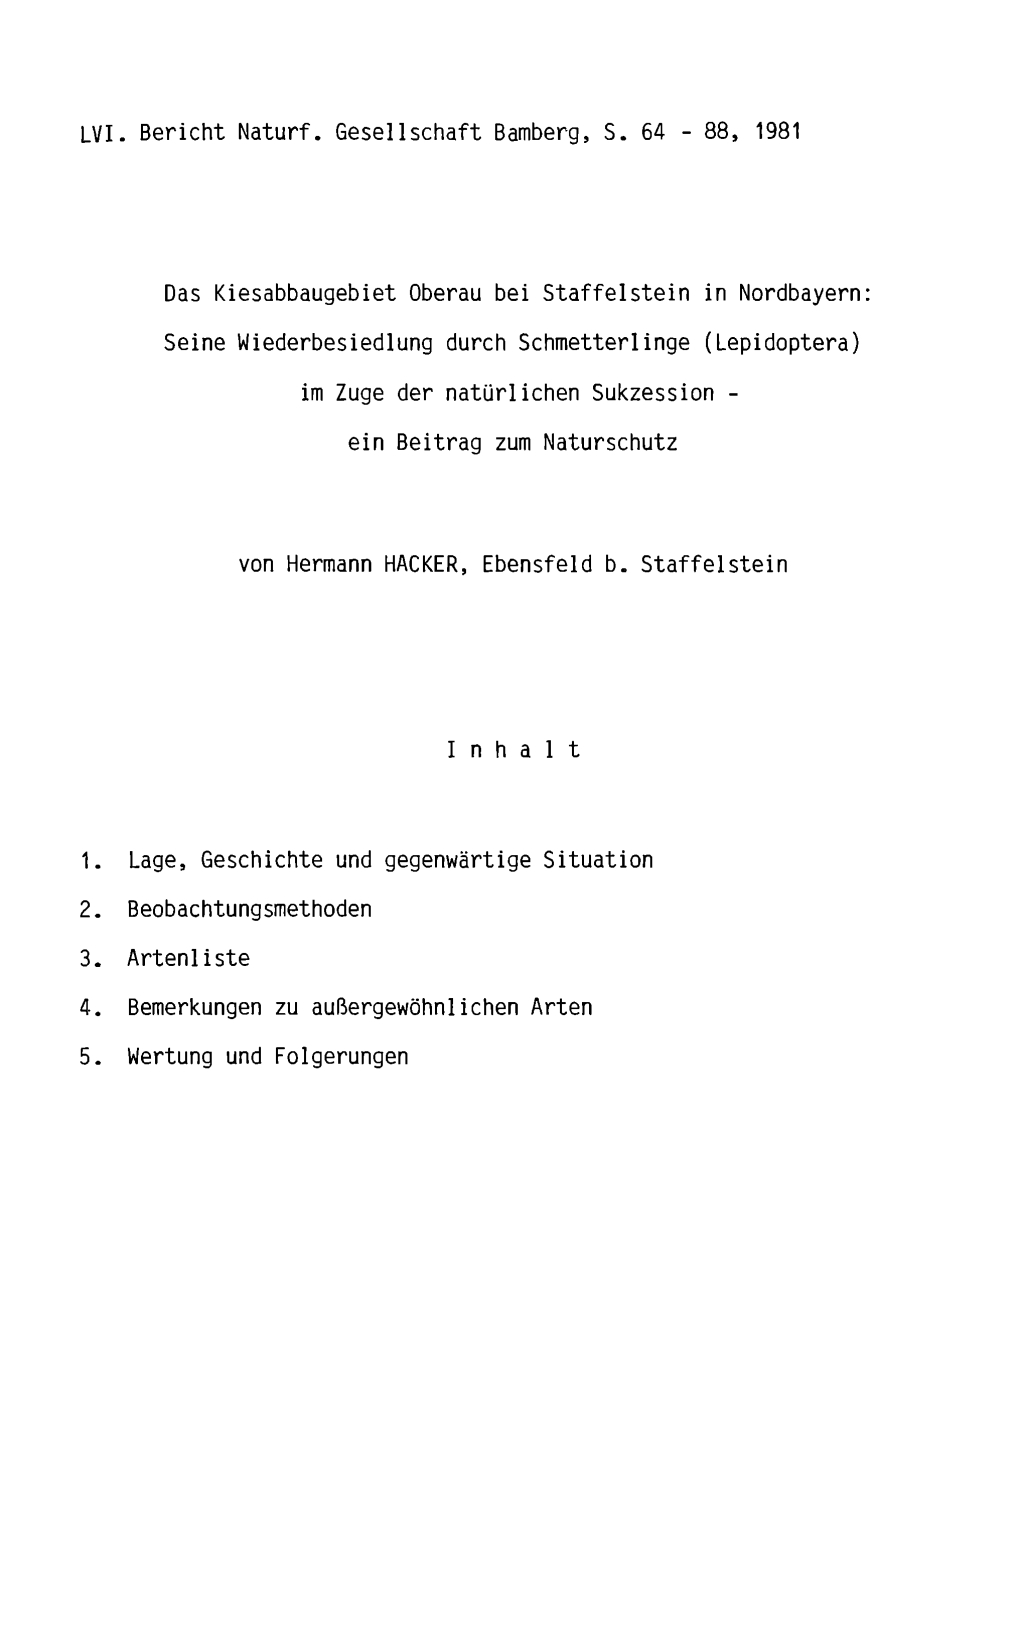 LVI. Bericht Naturf. Gesellschaft Bamberg, S. 64 - 88, 1981